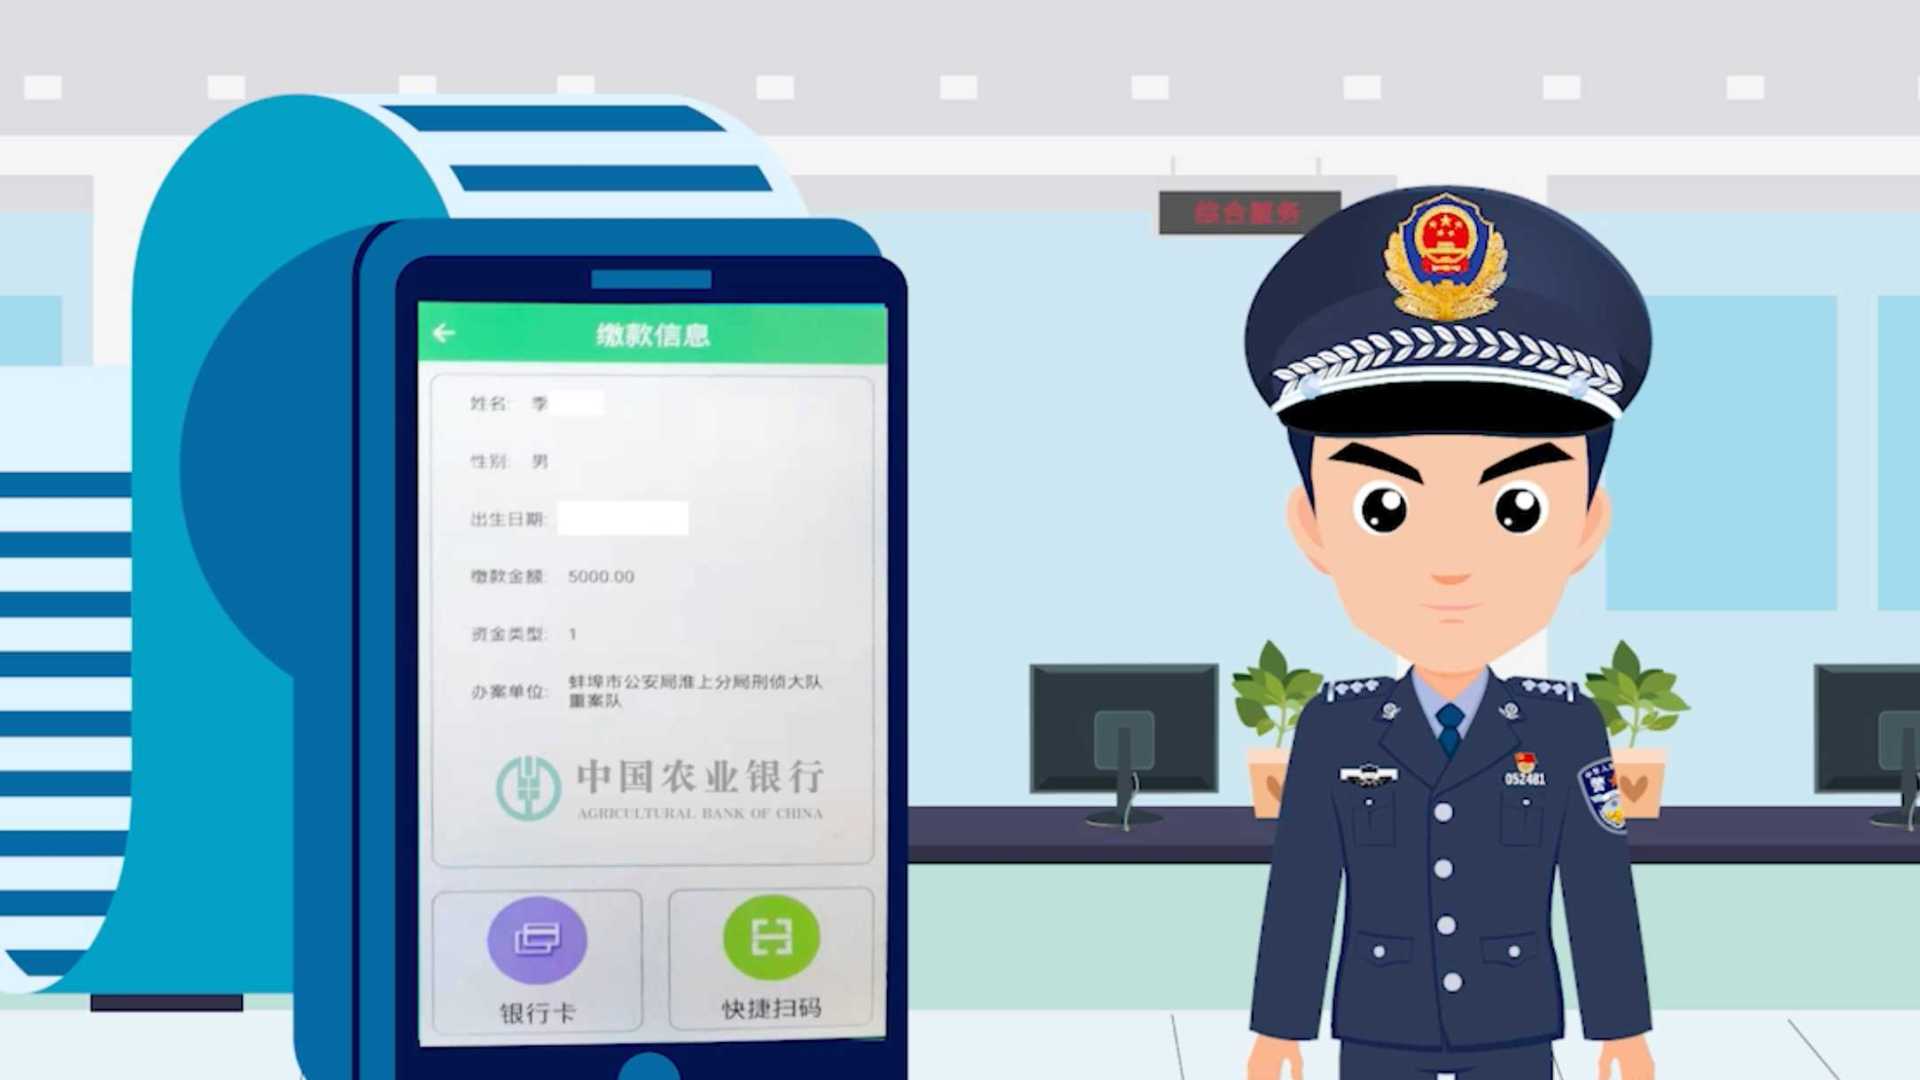 蚌埠市公安局-中国农业银行-涉案资金管理系统MG动画